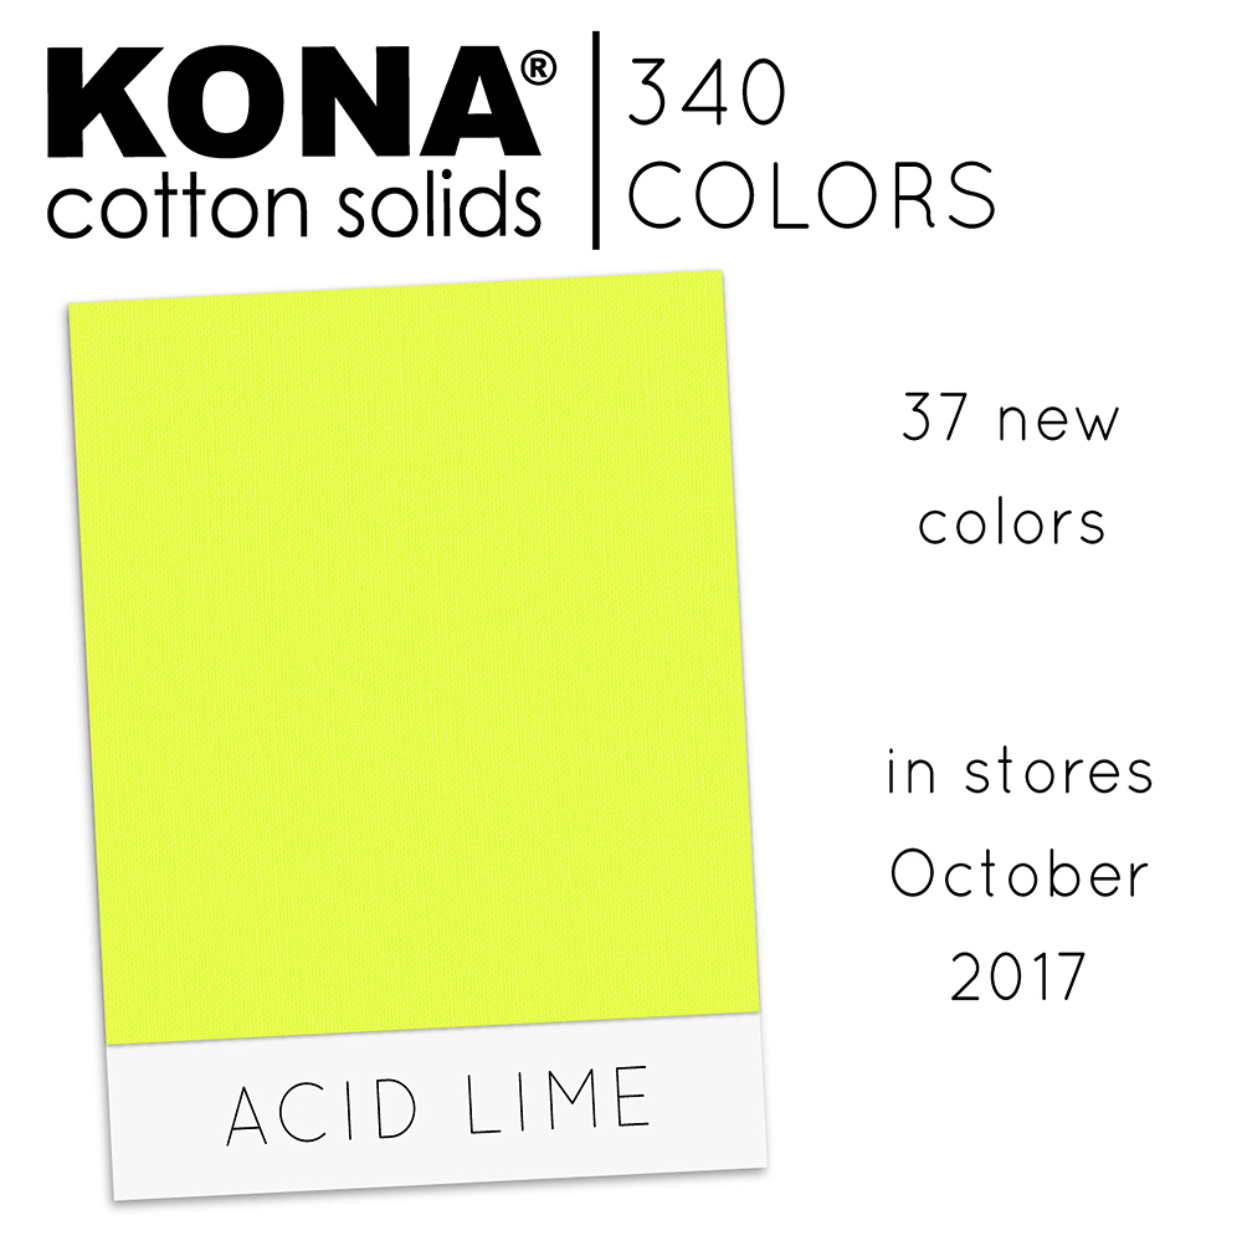 Kona Acid Lime